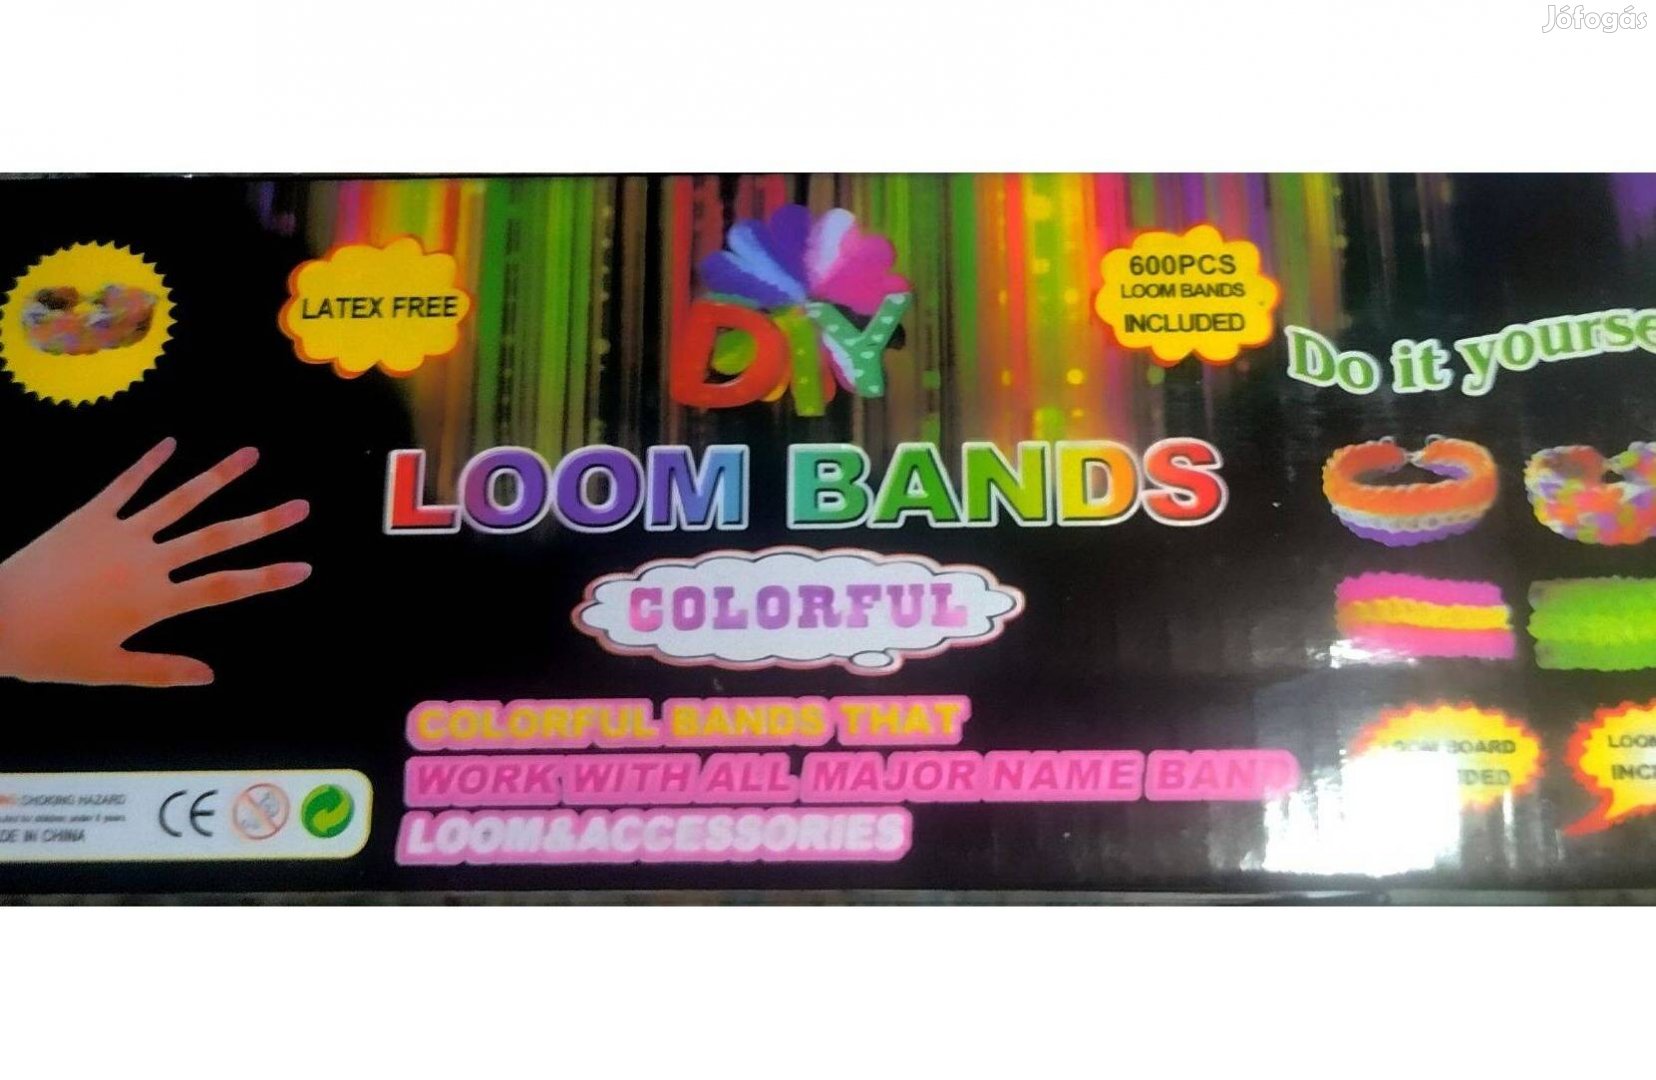 Loom Bands gumikarkötő készítő kezdő készlet paddal Új(Siófok